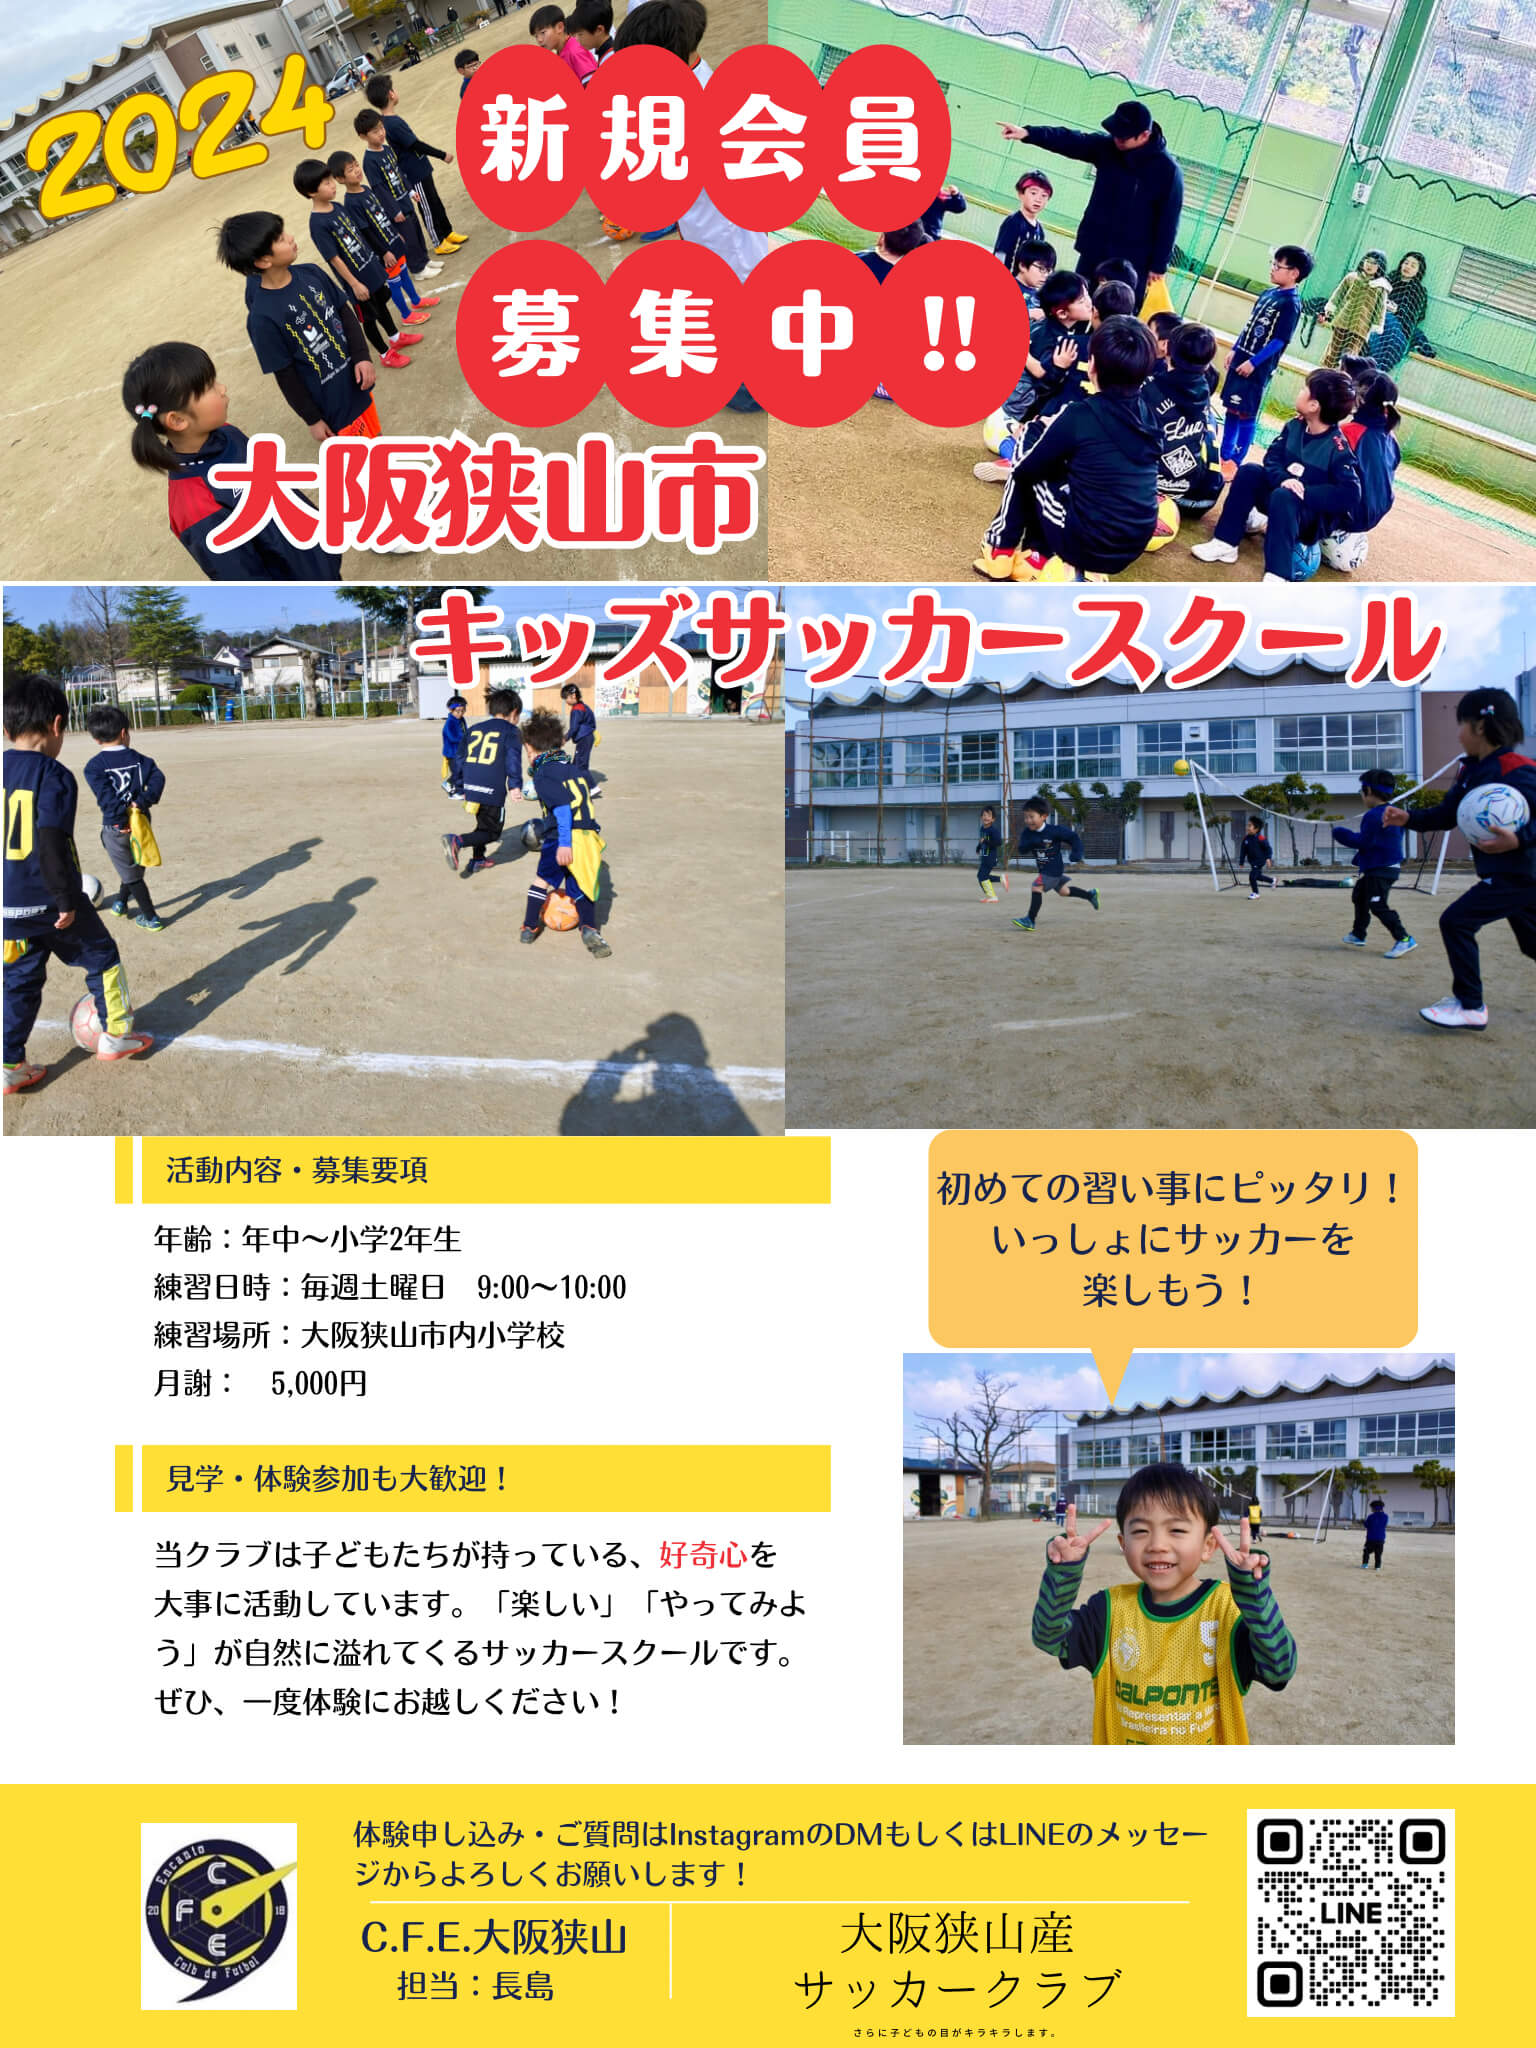 【生徒募集中】幼児〜小学3年生対象のサッカースクール「C.F.E (1)